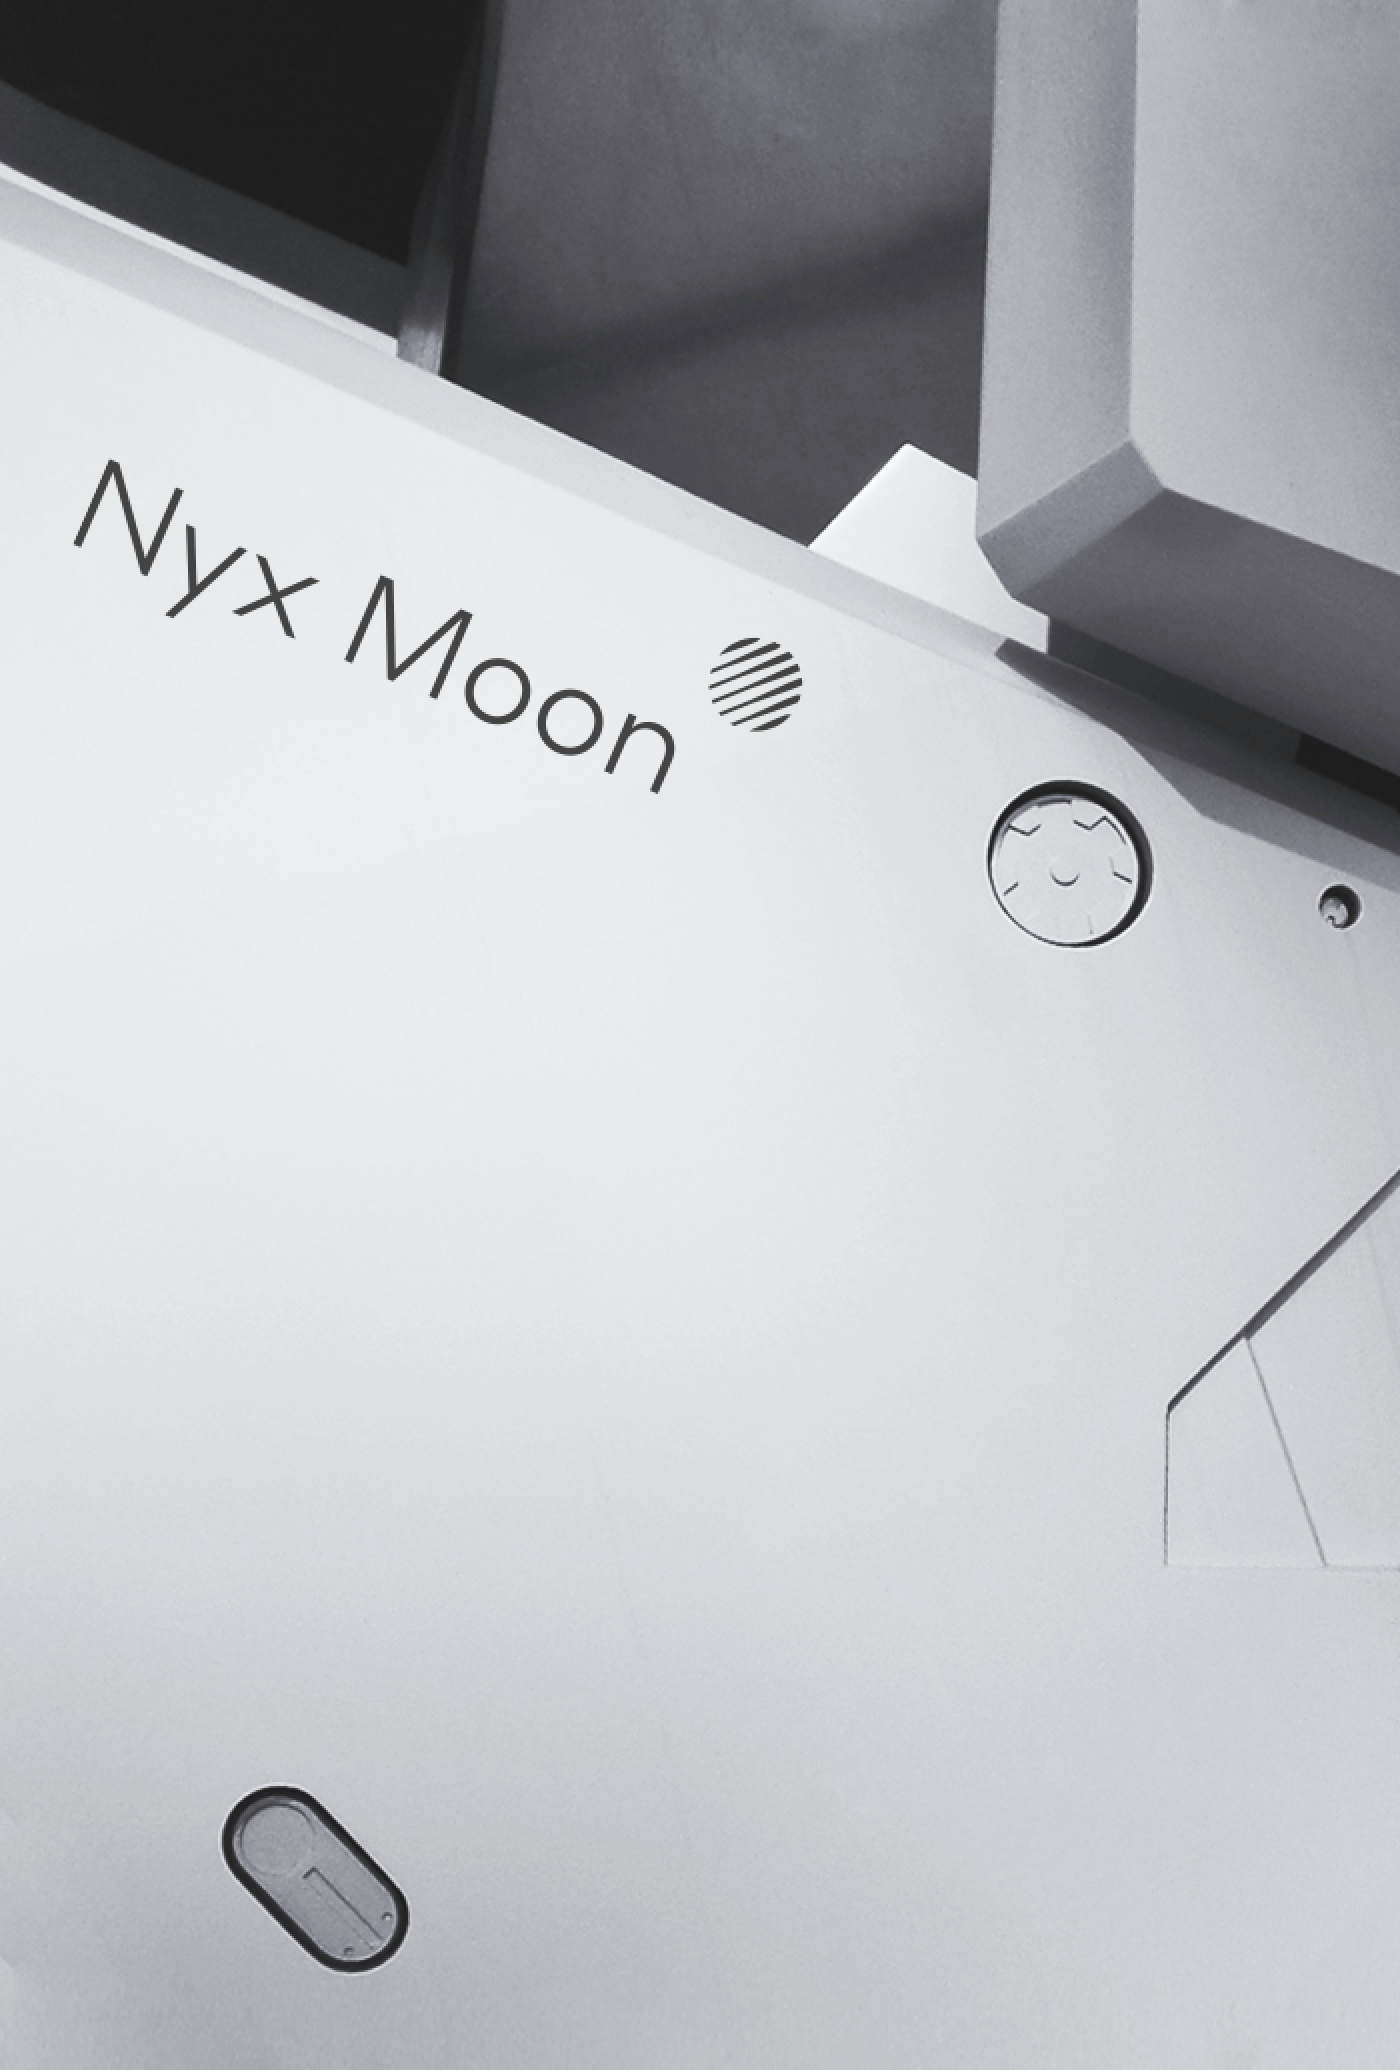 the exploration company nyx mission